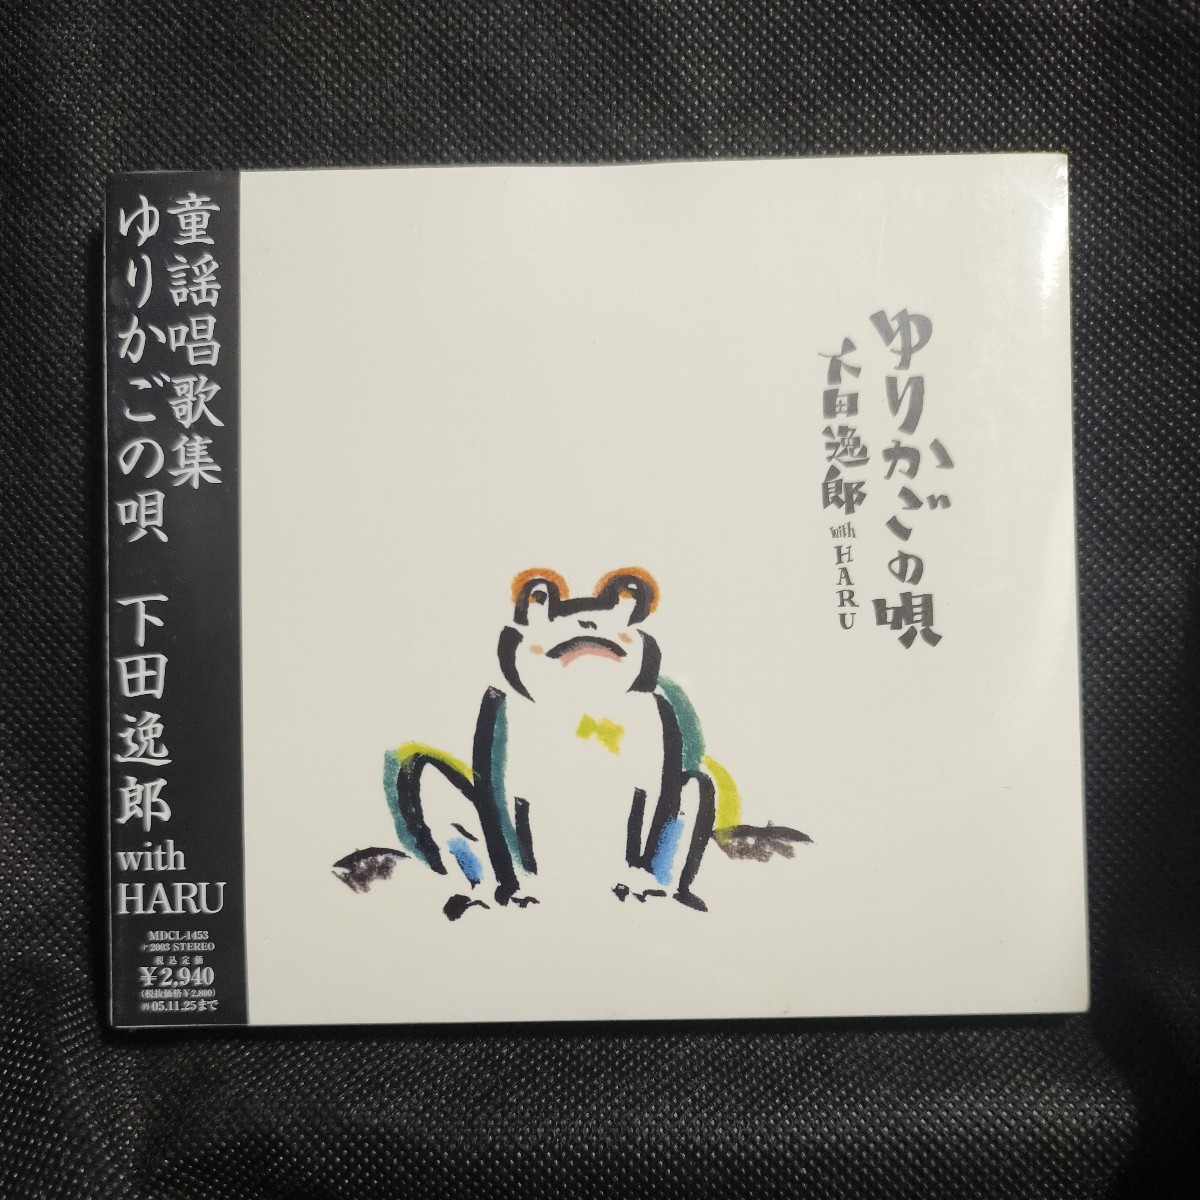 新品 [国内盤CD] 下田逸郎 with HARU/ゆりかごの唄_画像1